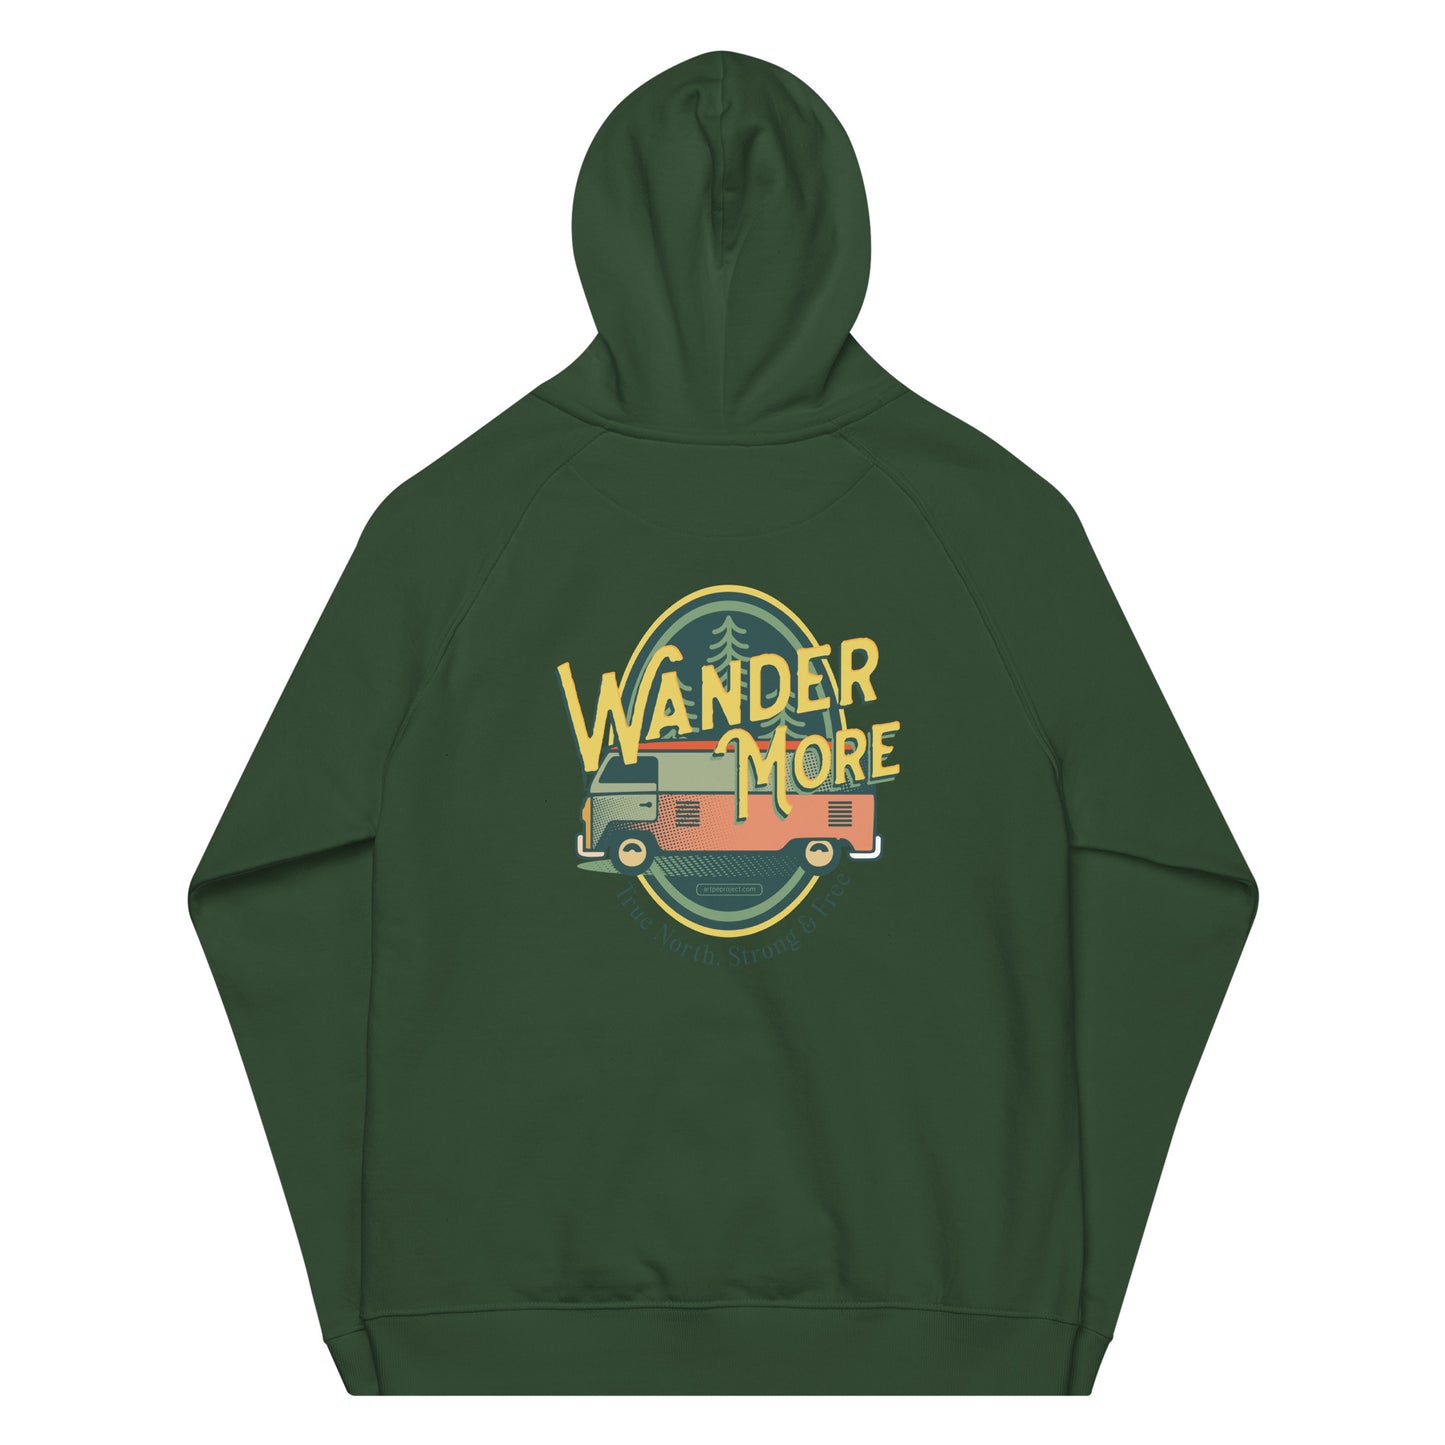 The Wander More Van Hoodie